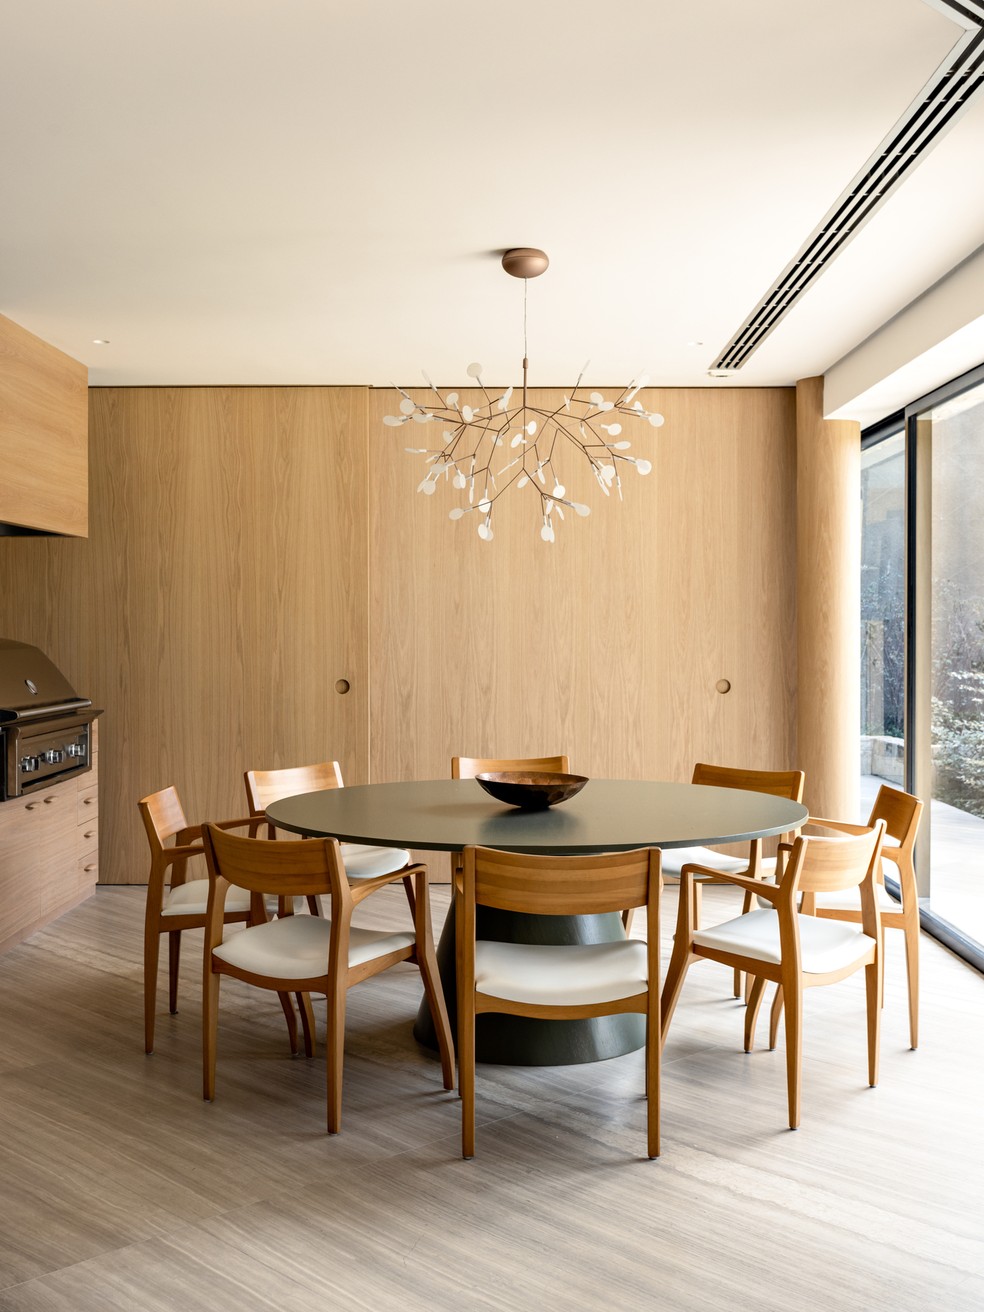 Cores neutras e mobiliário contemporâneo se encontram nesta casa de 884 m² em São Paulo — Foto: Fran Parente